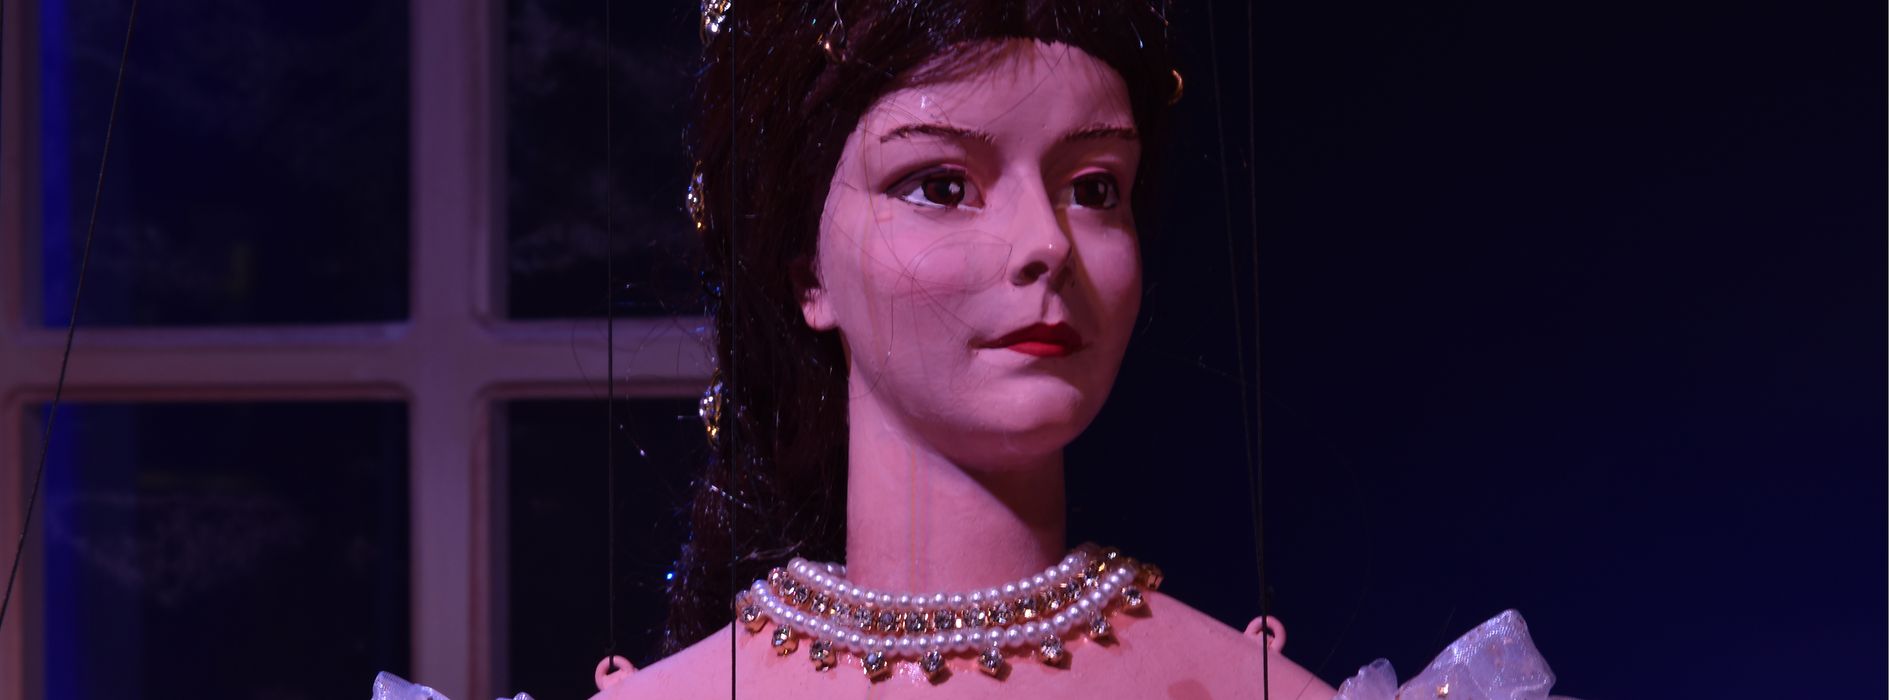 Empress Elisabeth as a marionette.